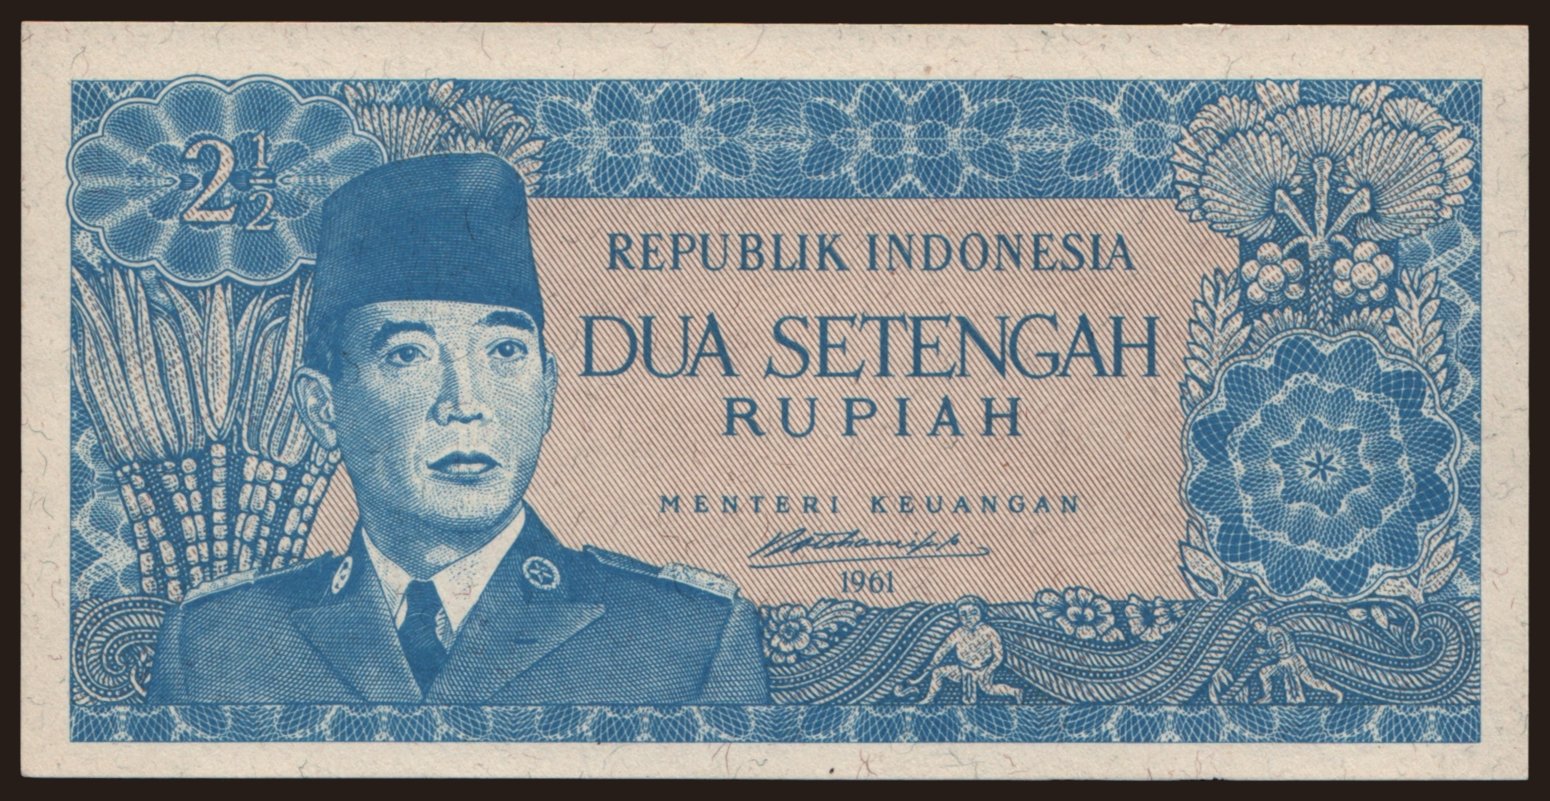 2 1/2 rupiah, 1961